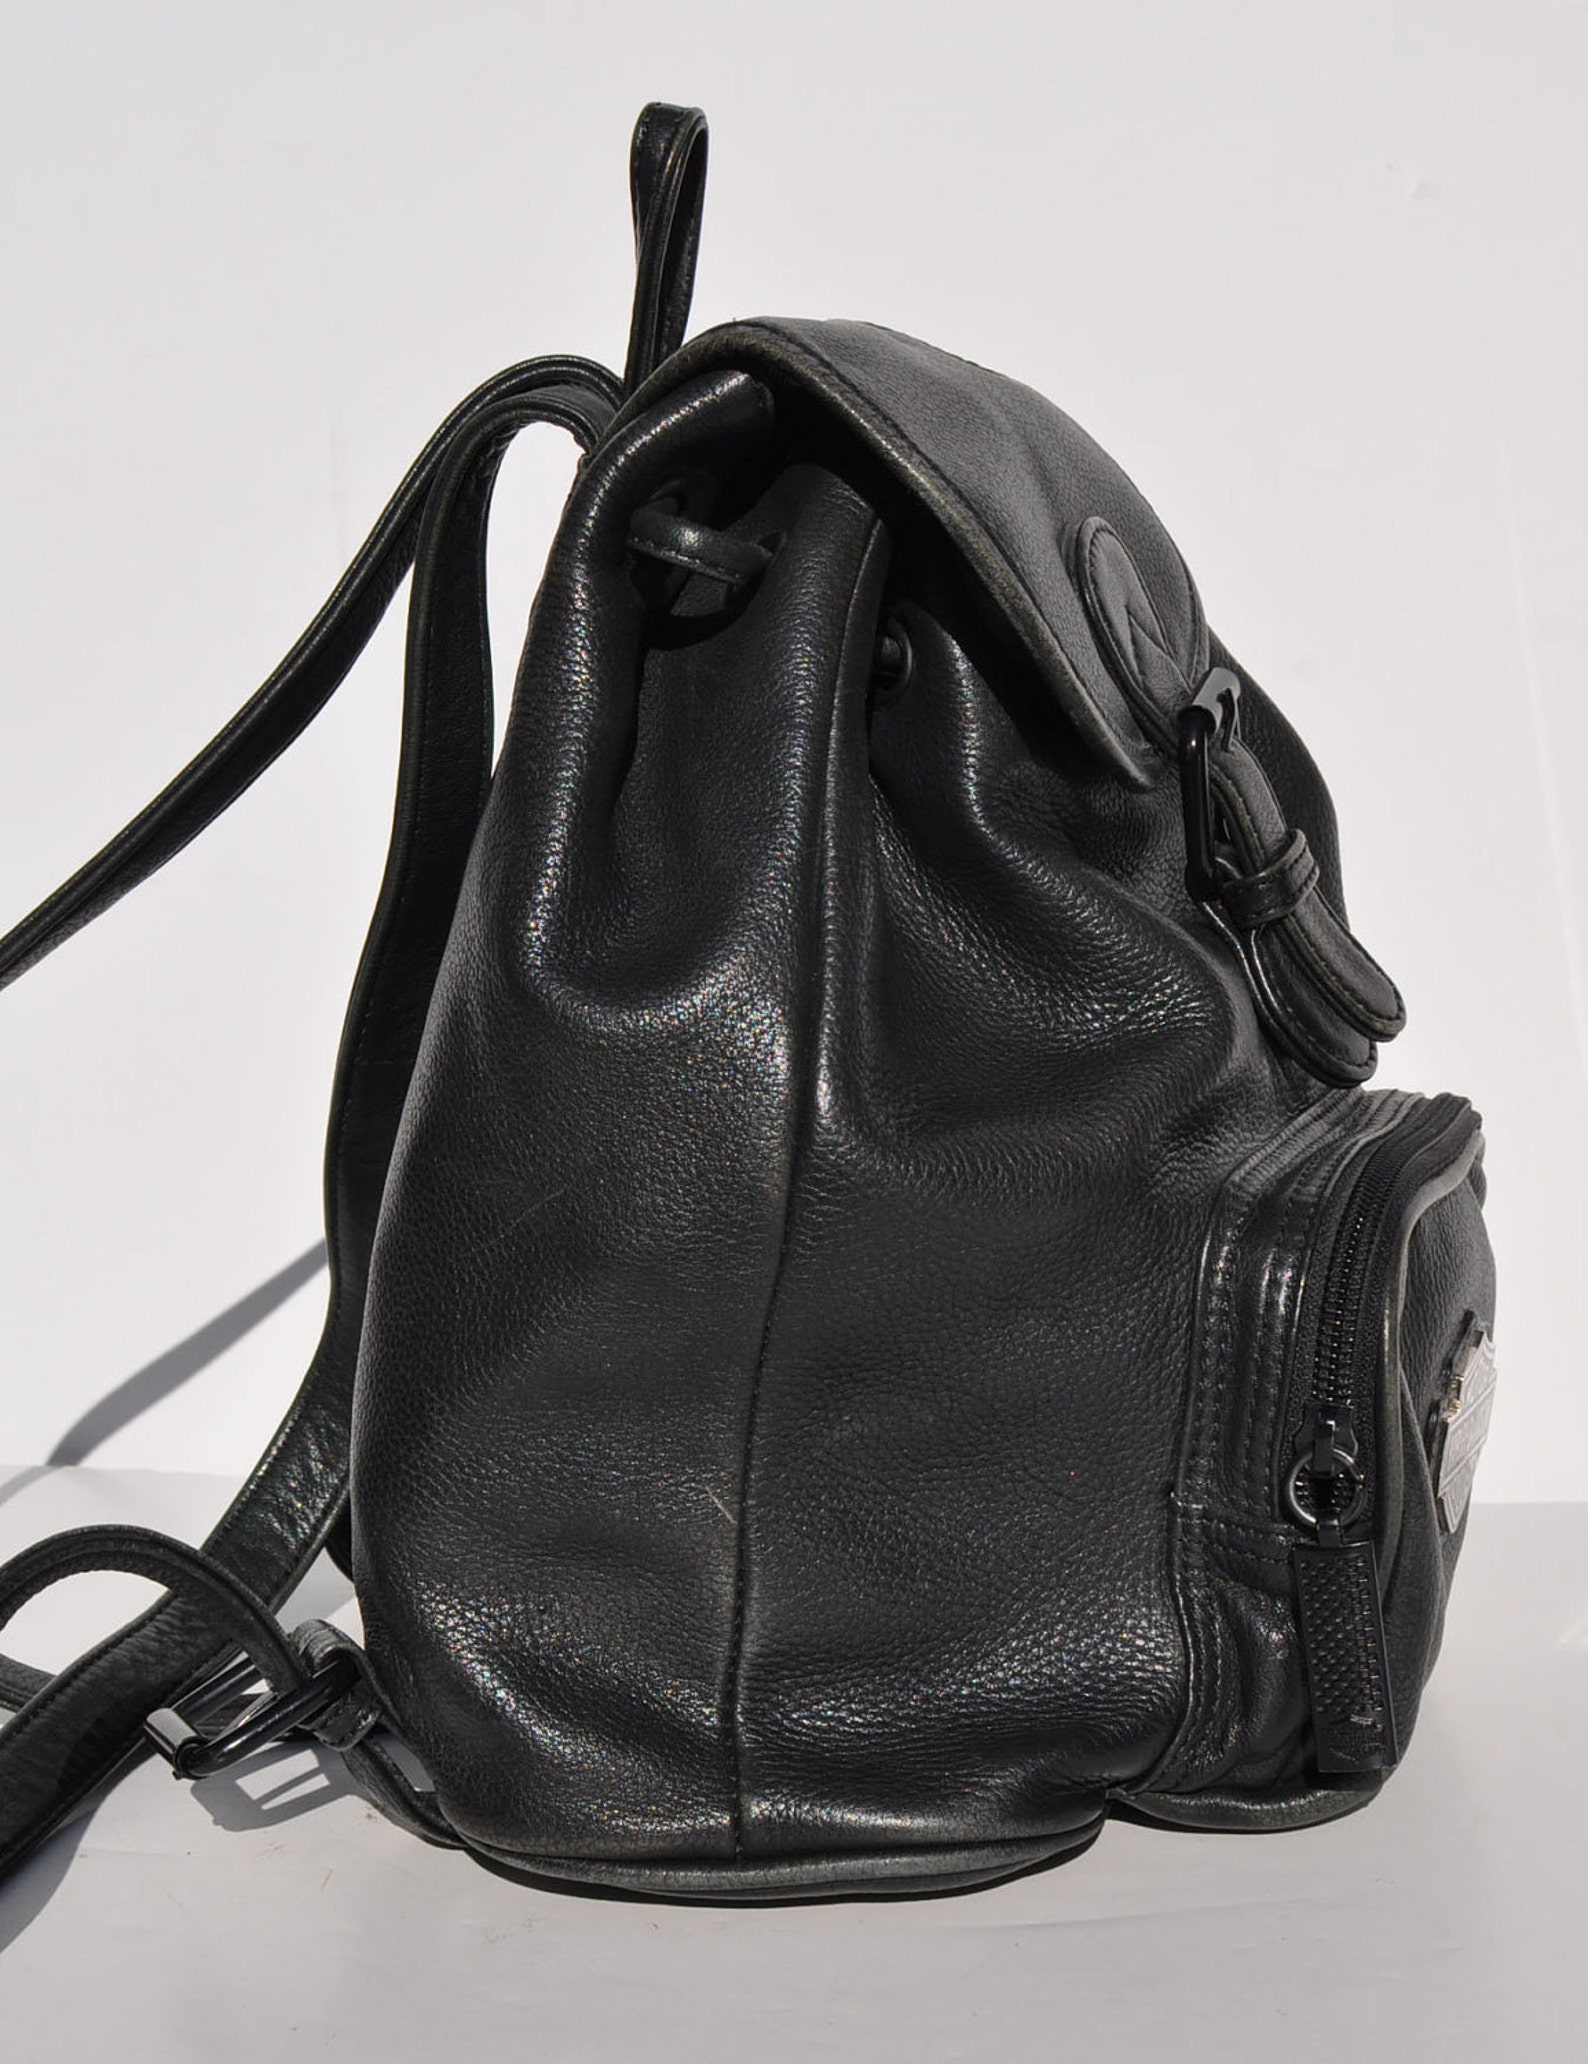 HARLEY DAVIDSON vintage leather BACKPACK tote rucksack back | Etsy